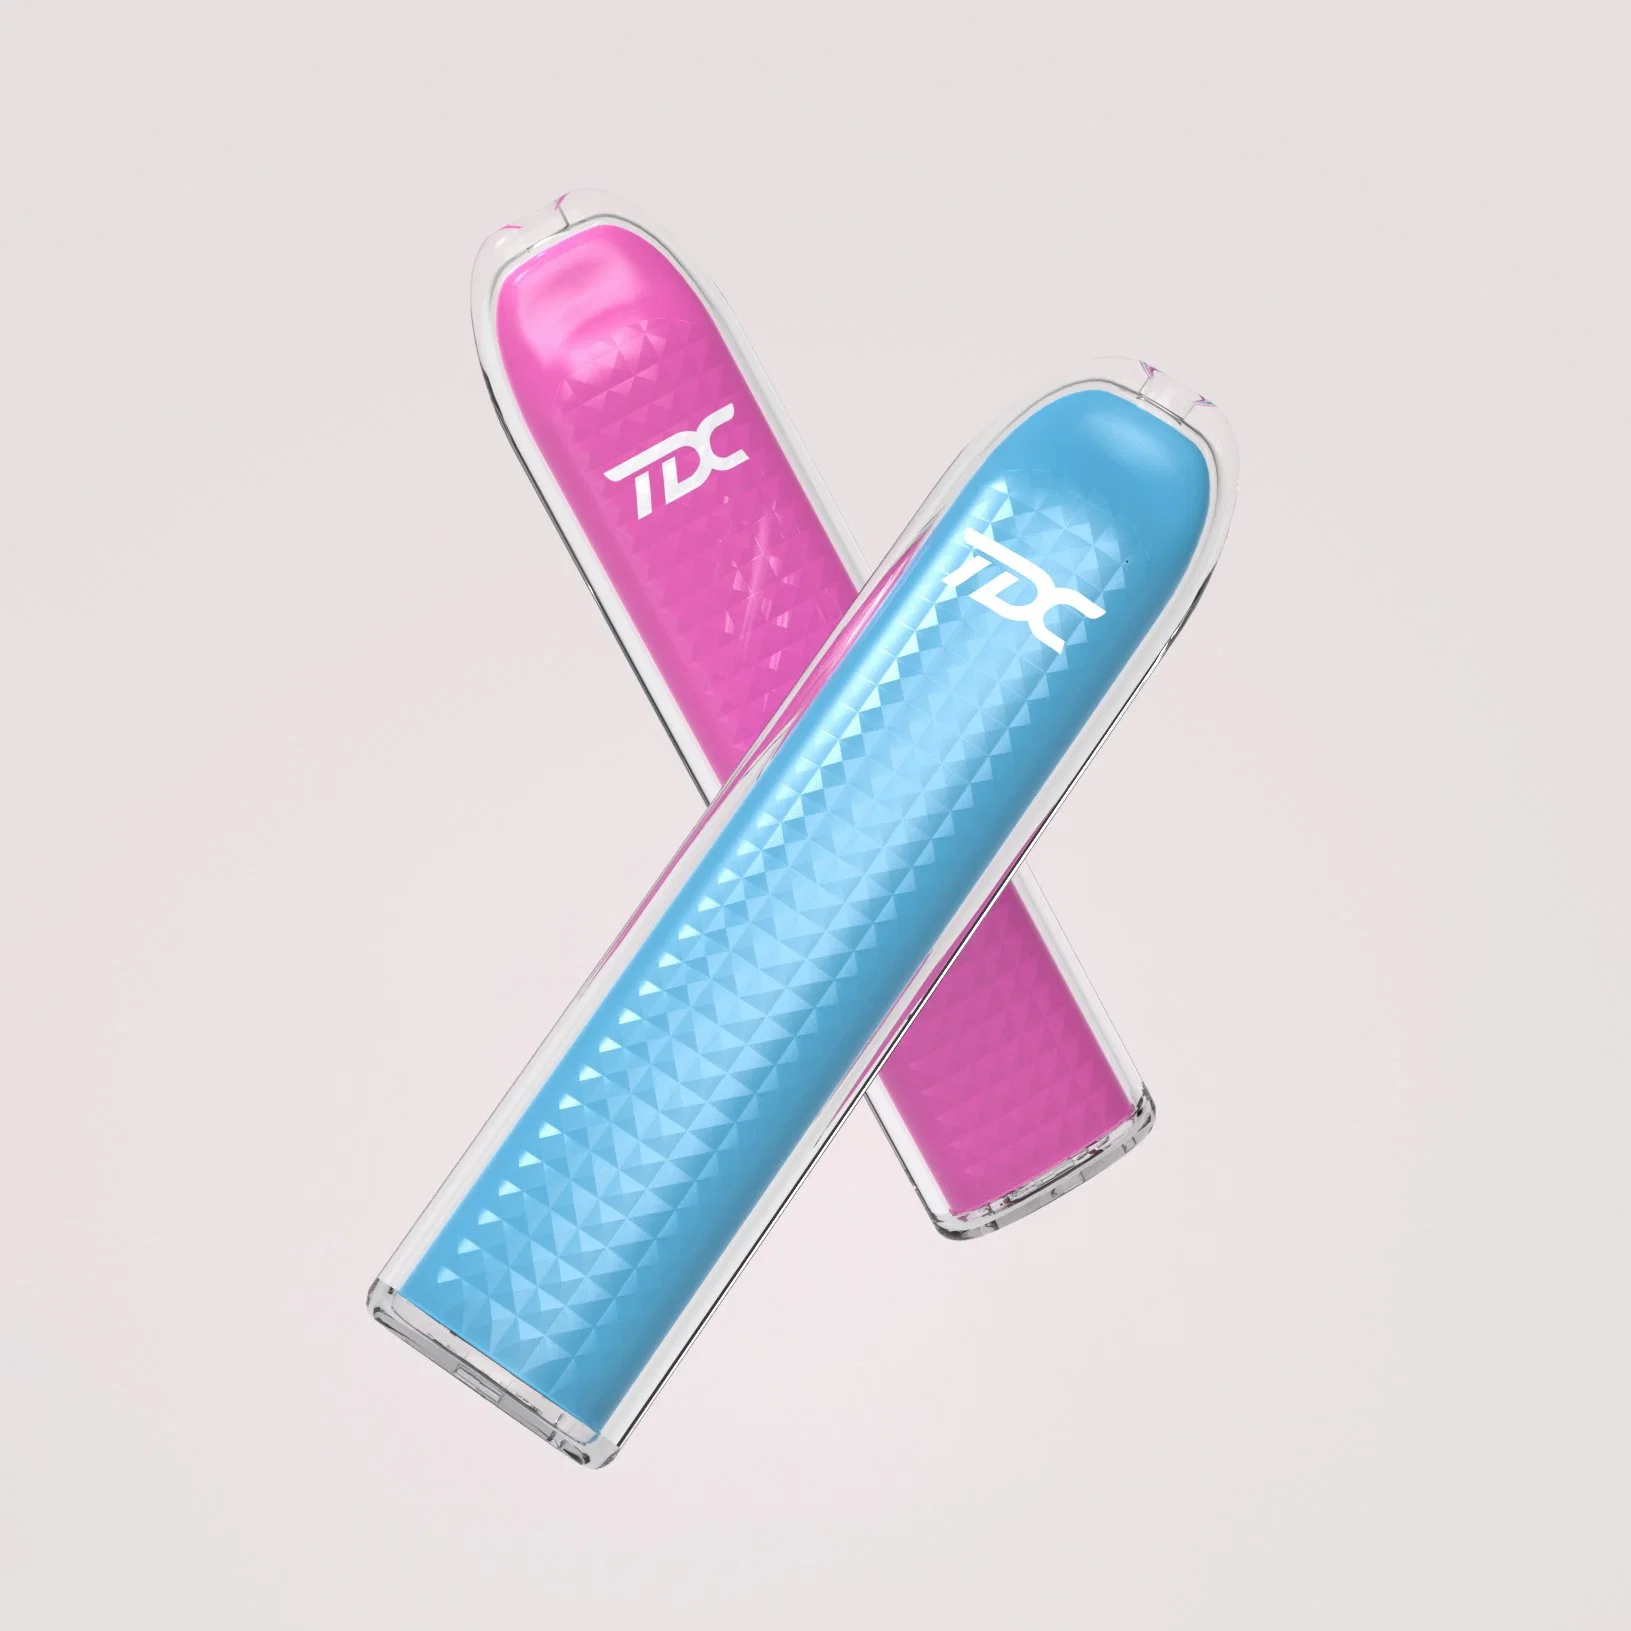 Tdc Wholesale Disposable Vape Elf New Electronic Cigarette Pen E-CIGS Vaporizer Clearomizer Fruit Flavor Stick